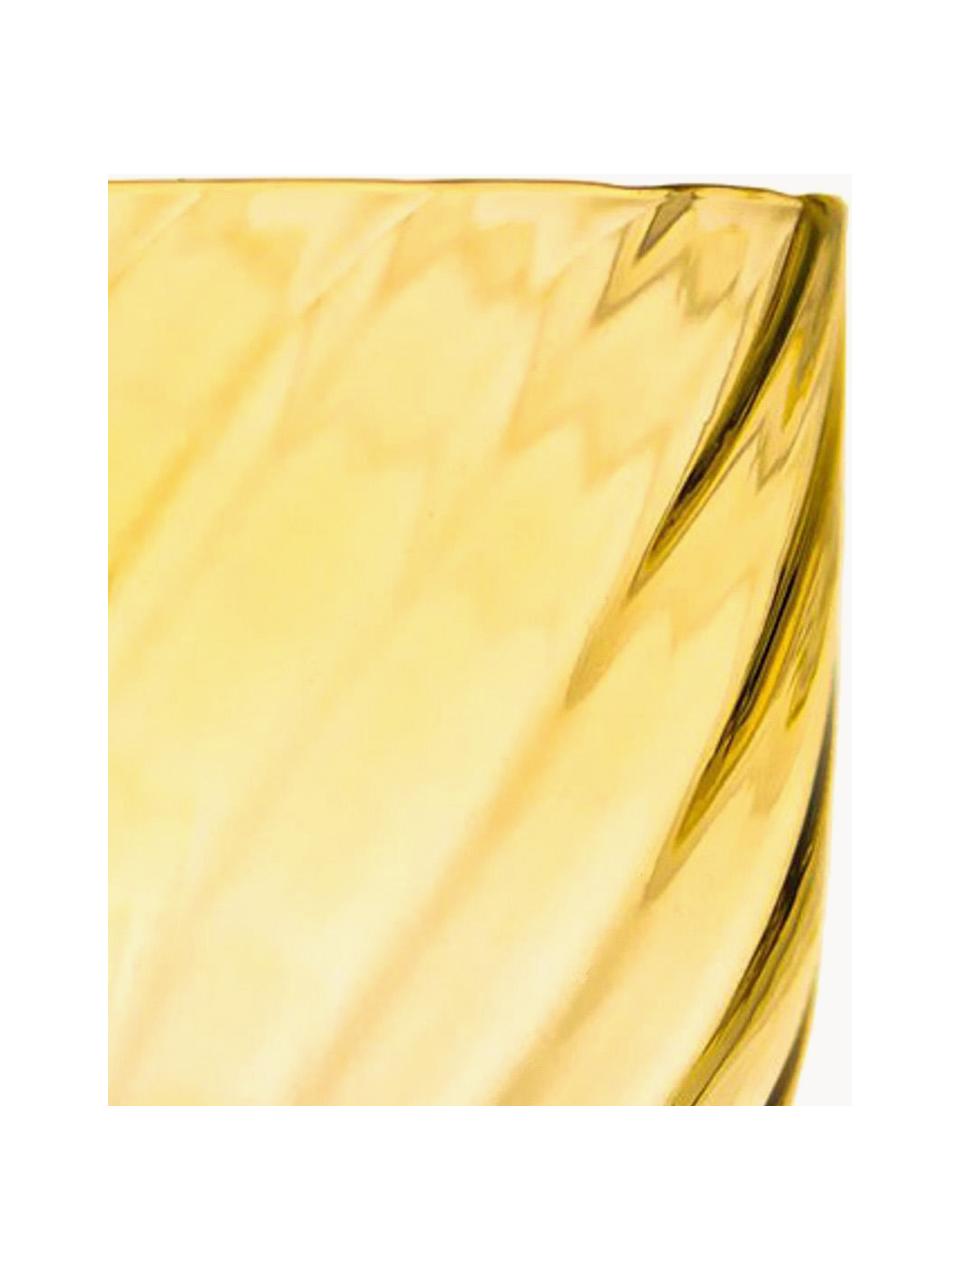 Szklanka ze szkła dmuchanego Swirl, 6 szt., Szkło, Cytrynowy żółty, Ø 7 x W 10 cm, 250 ml